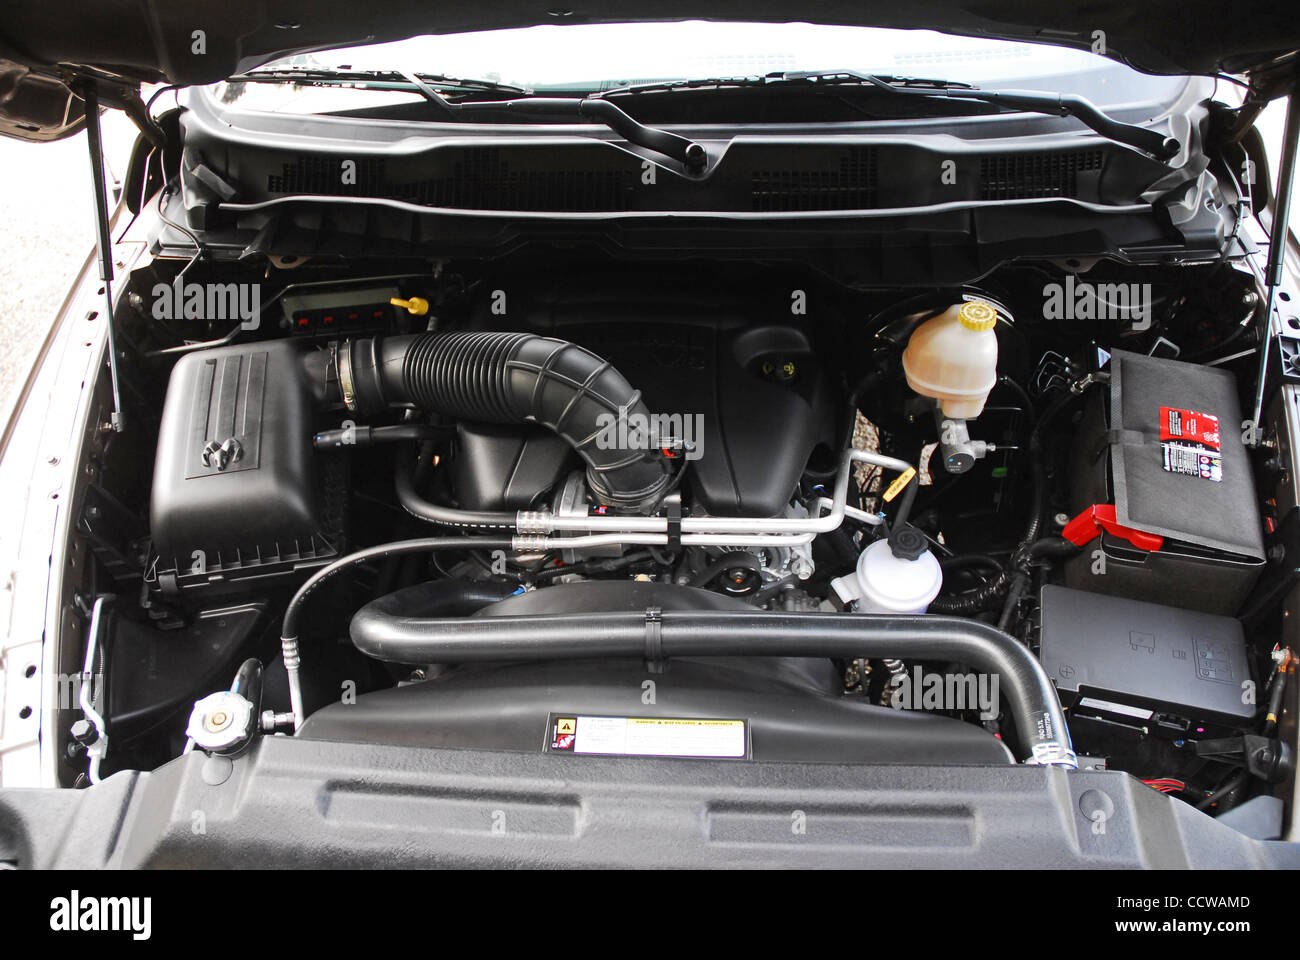 Aprile 19, 2010. Los Angeles, California-USA. Il 2010 Dodge Ram Hemi  Bighorn Crew Cab è offerto esclusivamente con un 390hp HEMI V8 motore.  Veicolo in Austin Tan perla. Nella foto: 5,7 litro